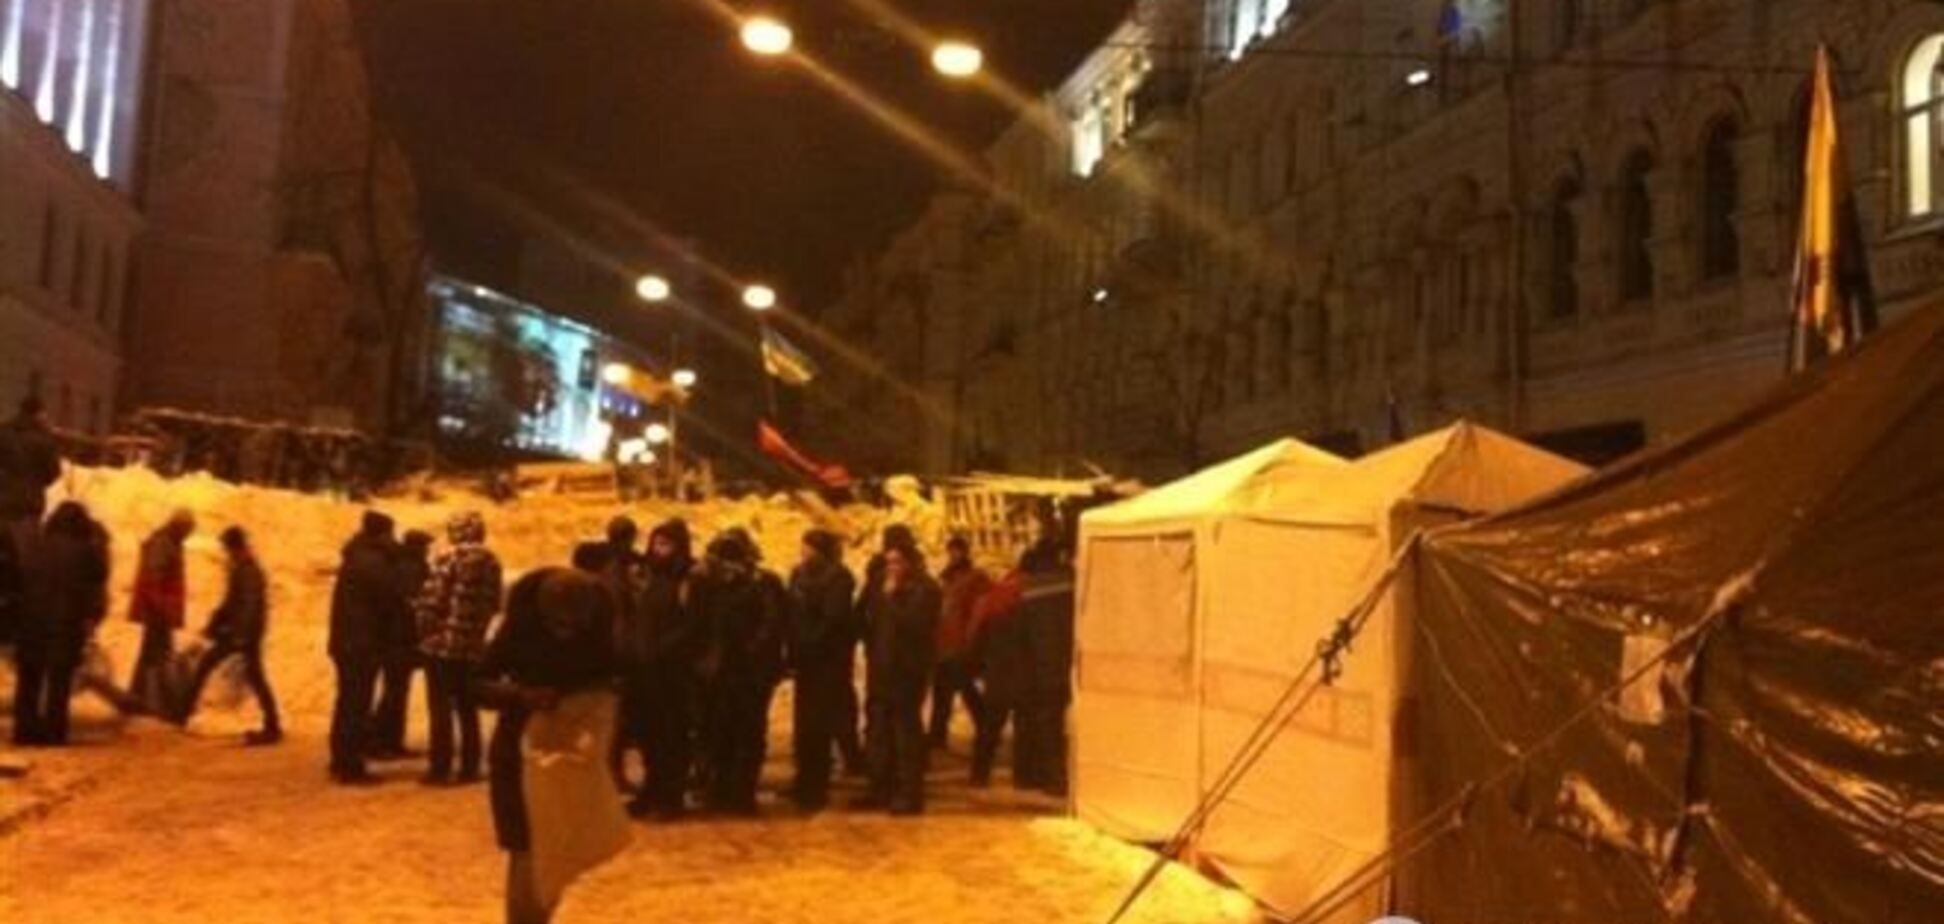 Евромайдановцы укрепляют баррикады снегом и поливают их водой